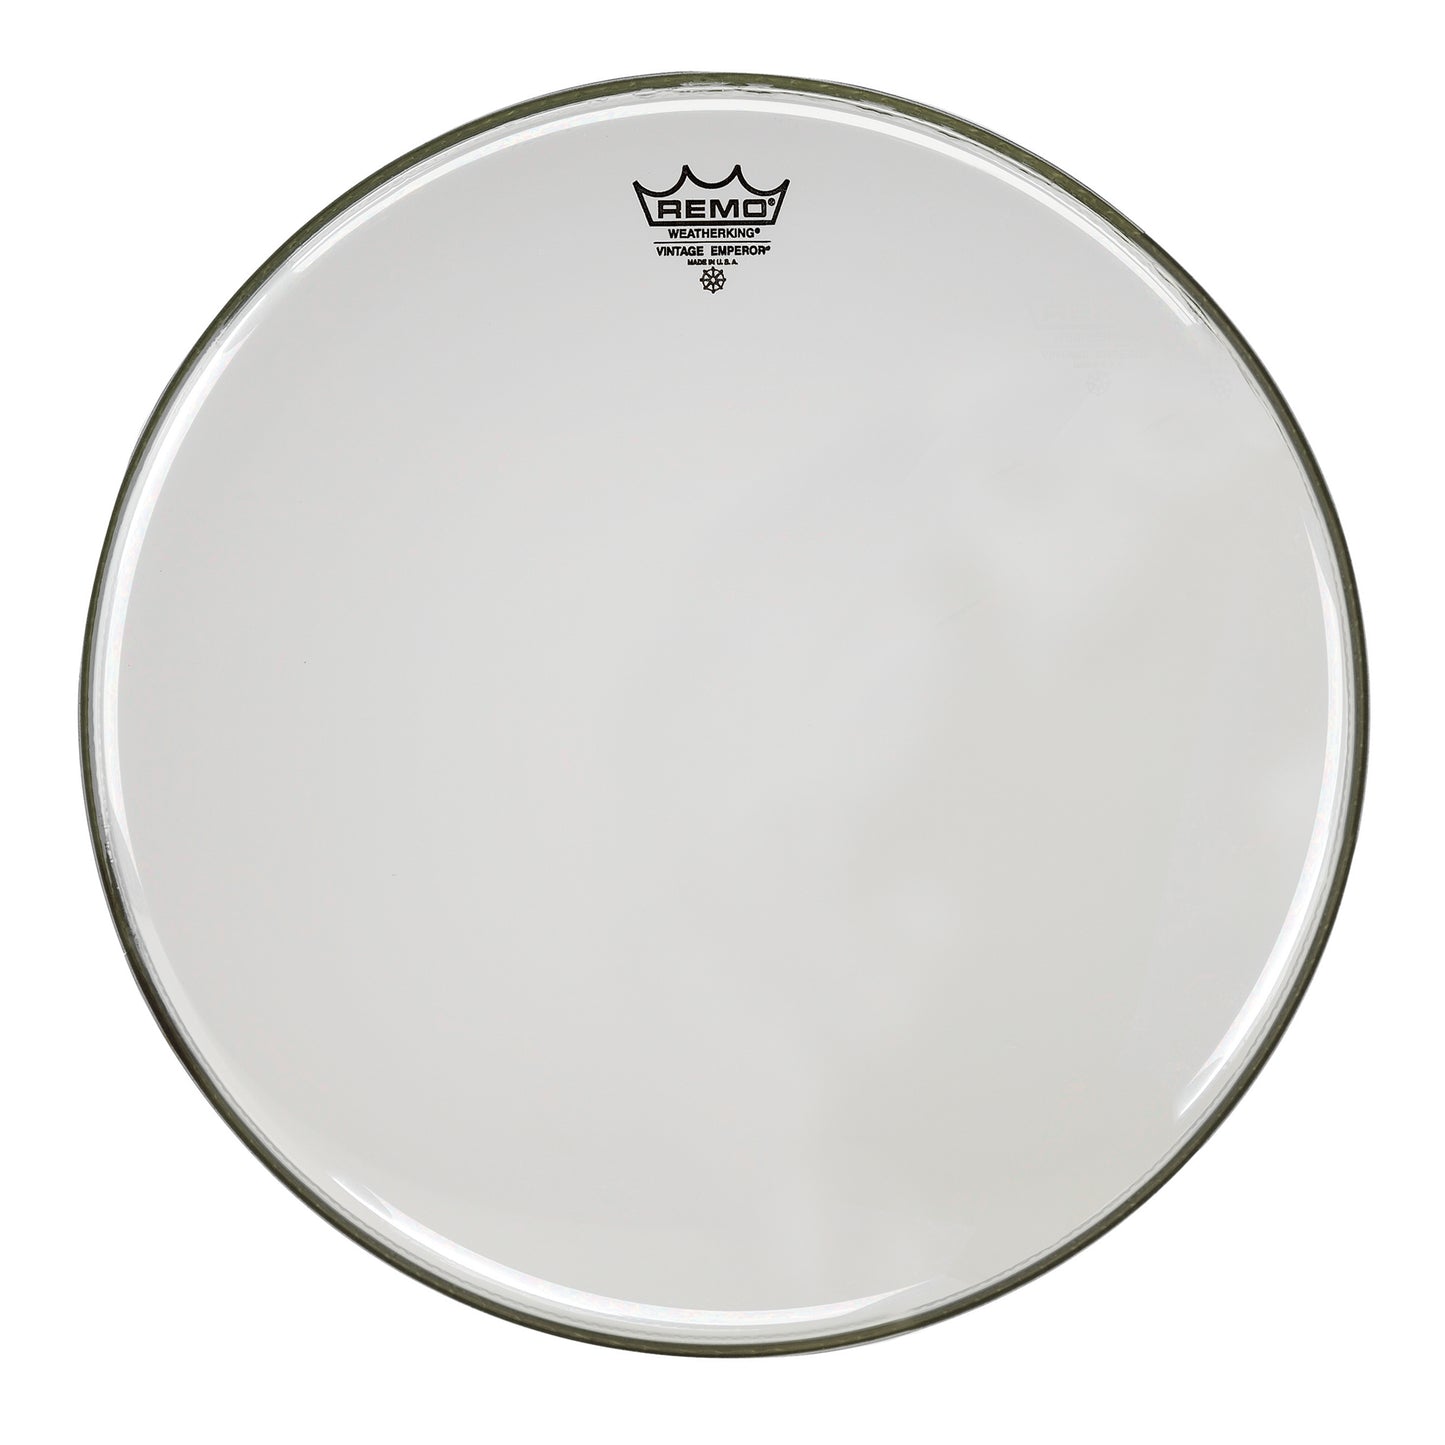 Remo VE031000 10" Vintage Clear Emperor Drum Head